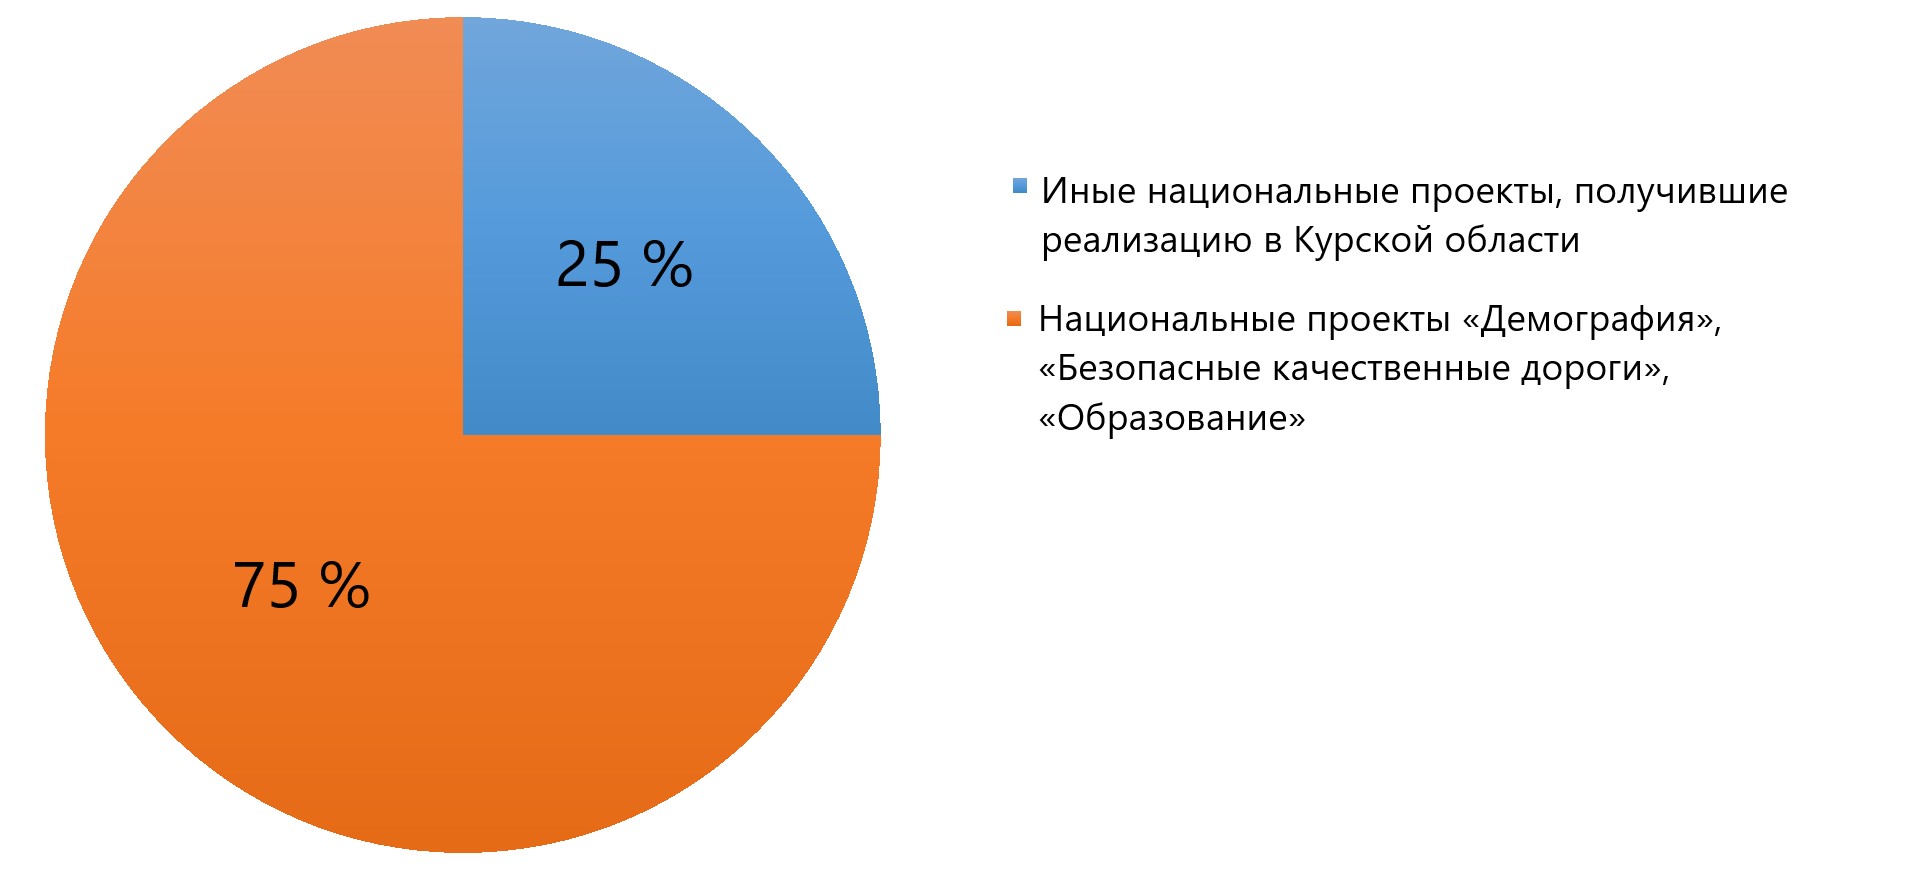 Распределение средств на национальные проекты, реализуемые в Курской области в 2021 году